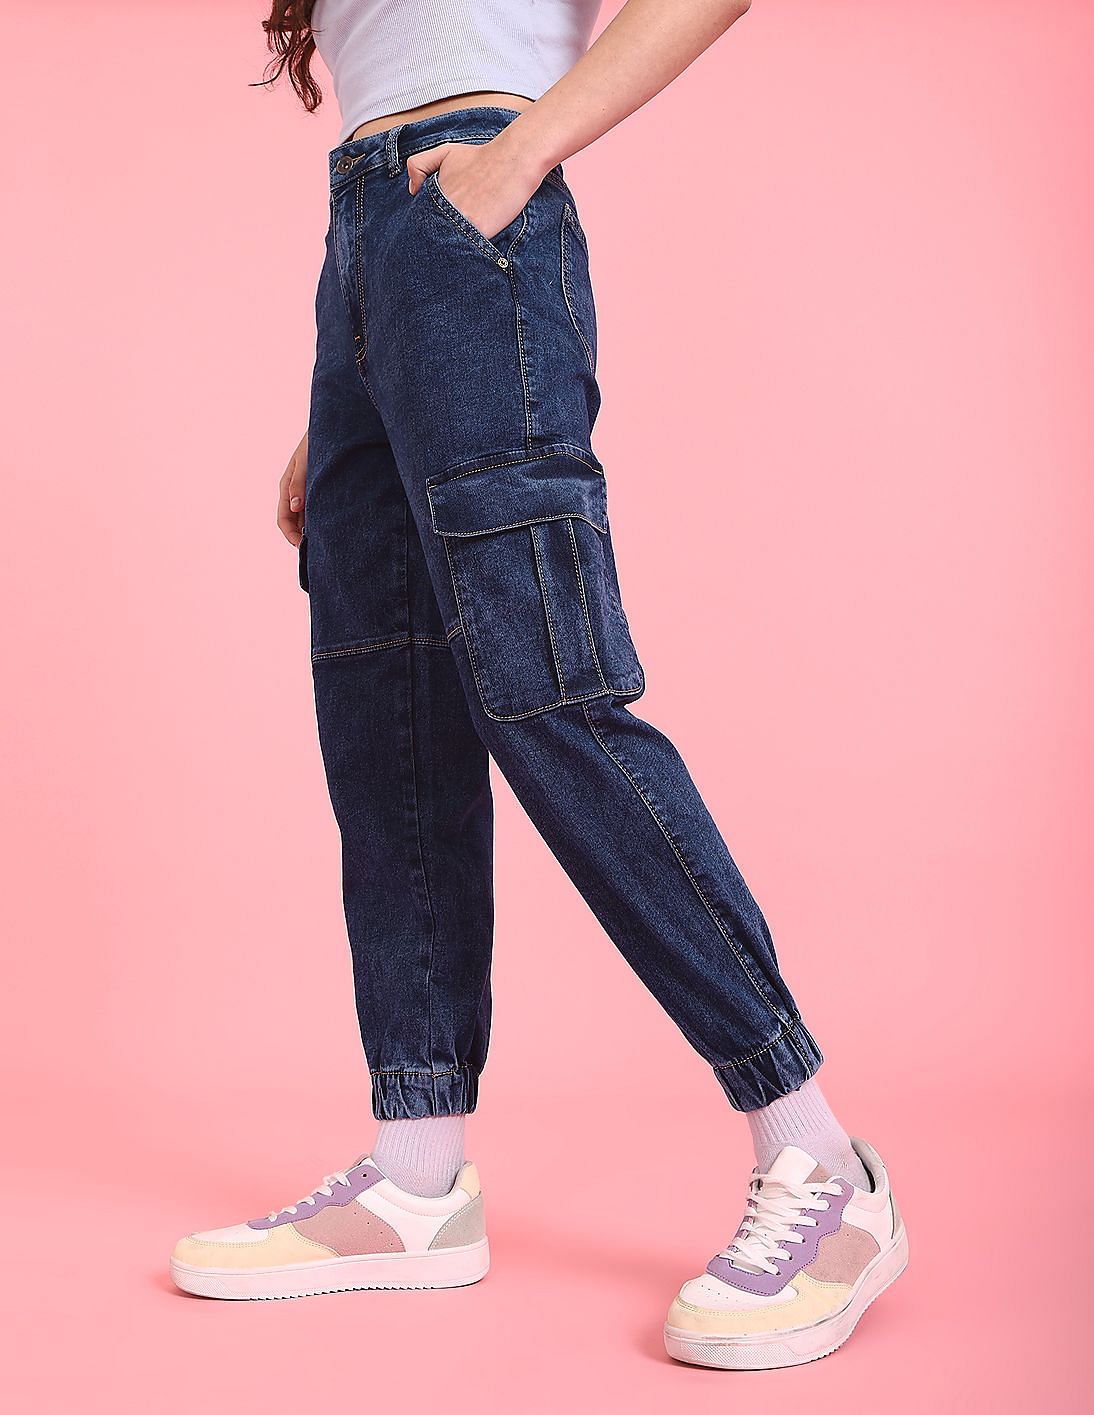 Vintage Cargo Pants Baggy Jeans Women Fashion 90s Streetwear Pockets | eBay